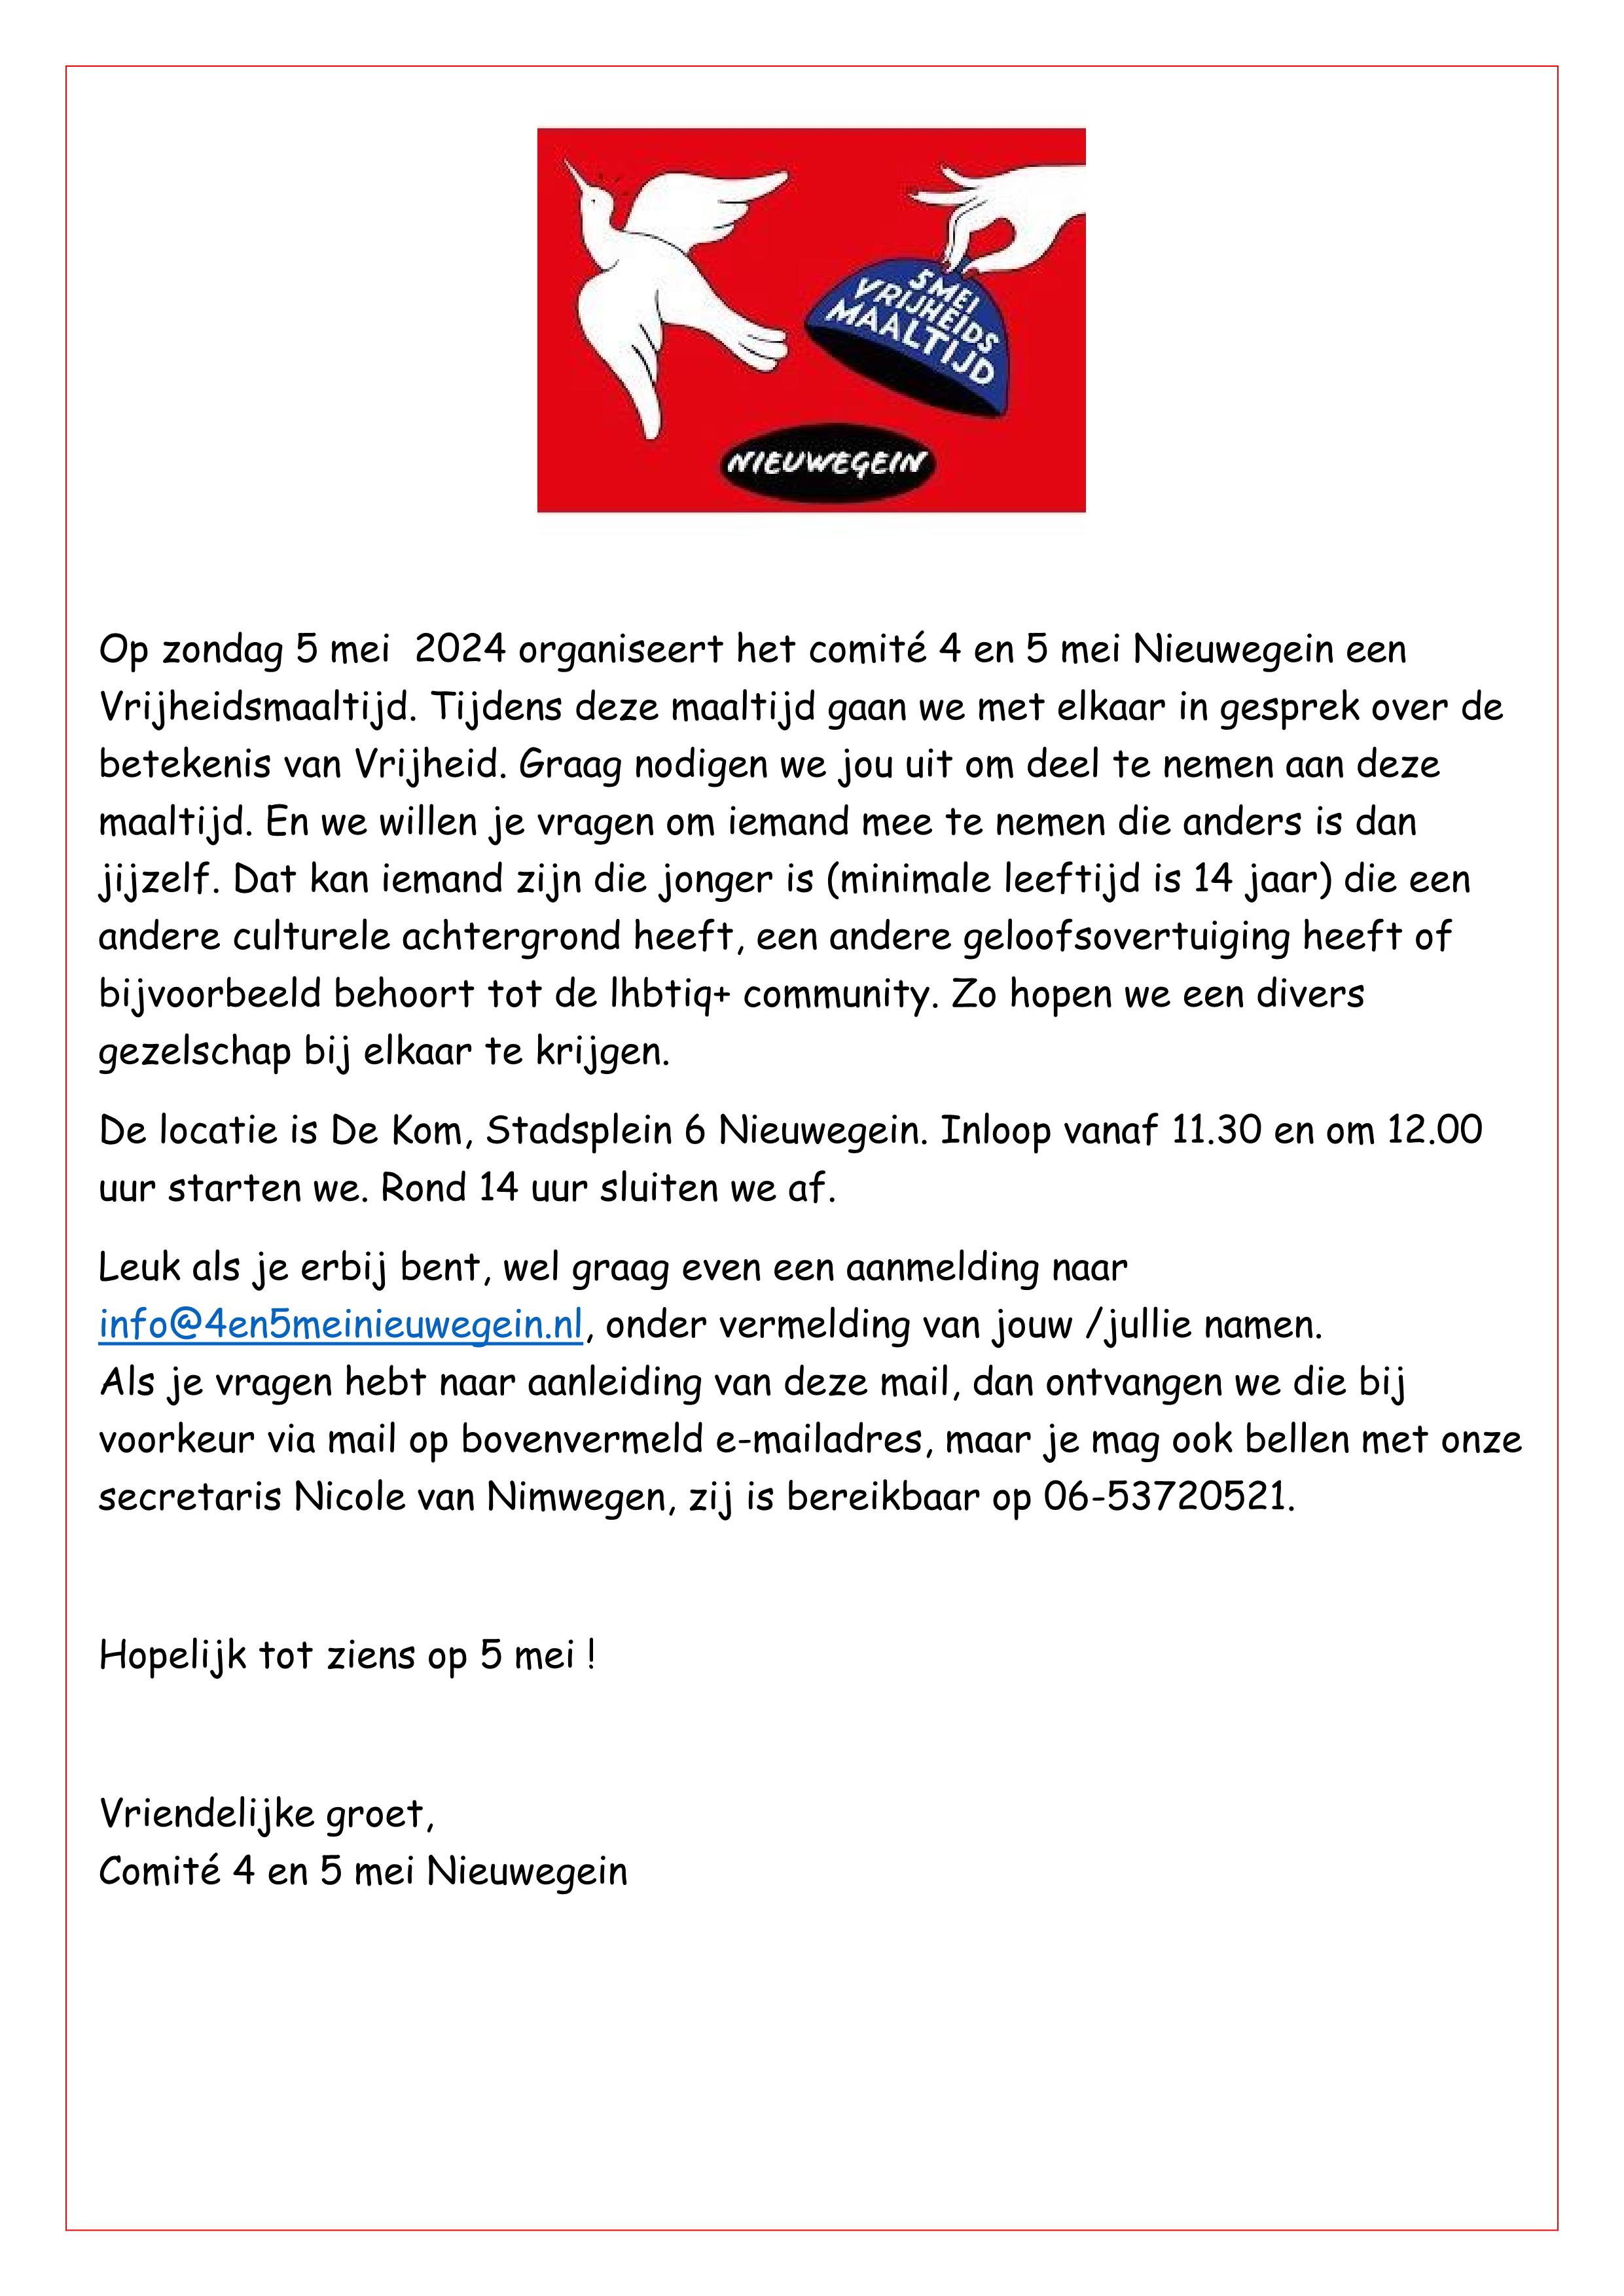 https://www.nieuwegeinsewijken.nl/batau-zuid/upload/afbeeldingen/uitnodiging-5-mei-2024.jpg